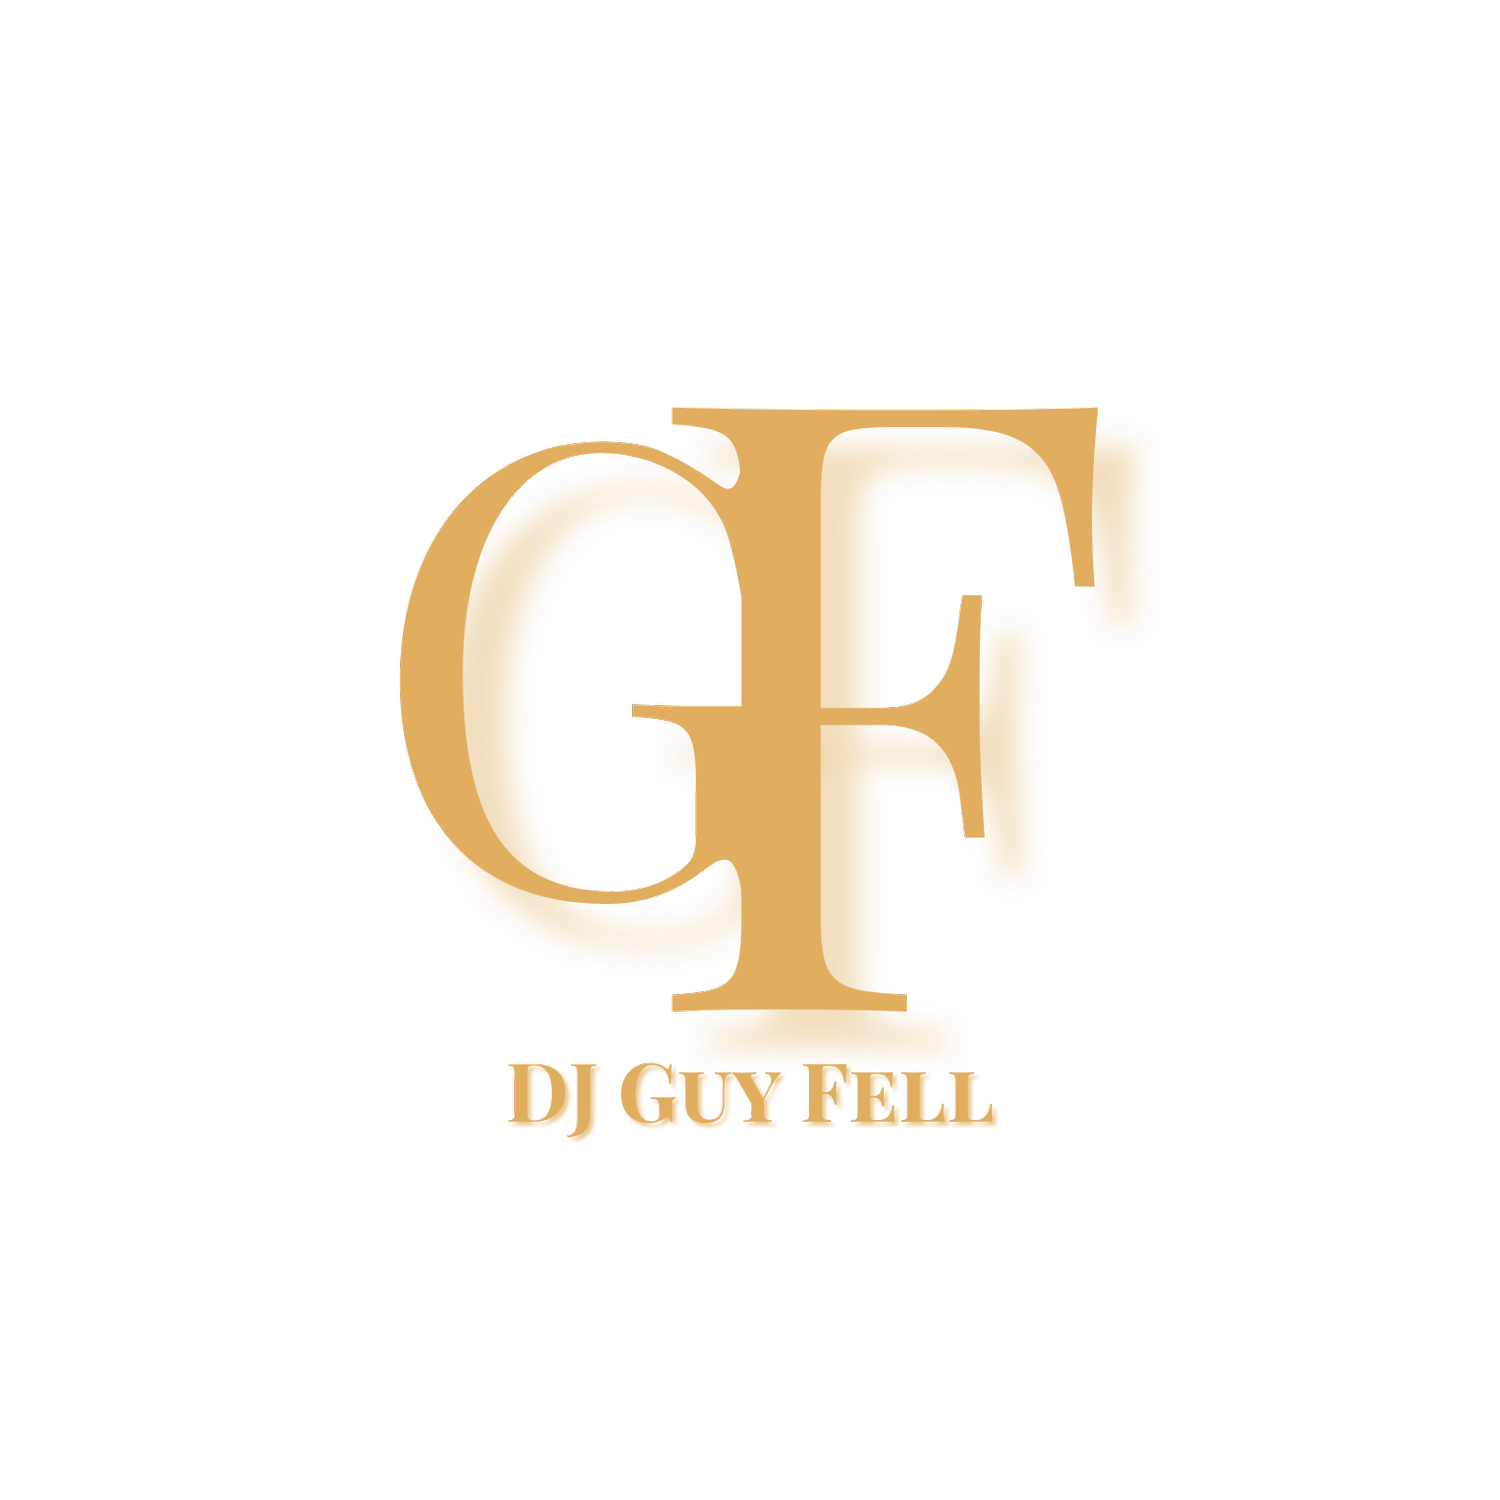 DJ Guy Fell